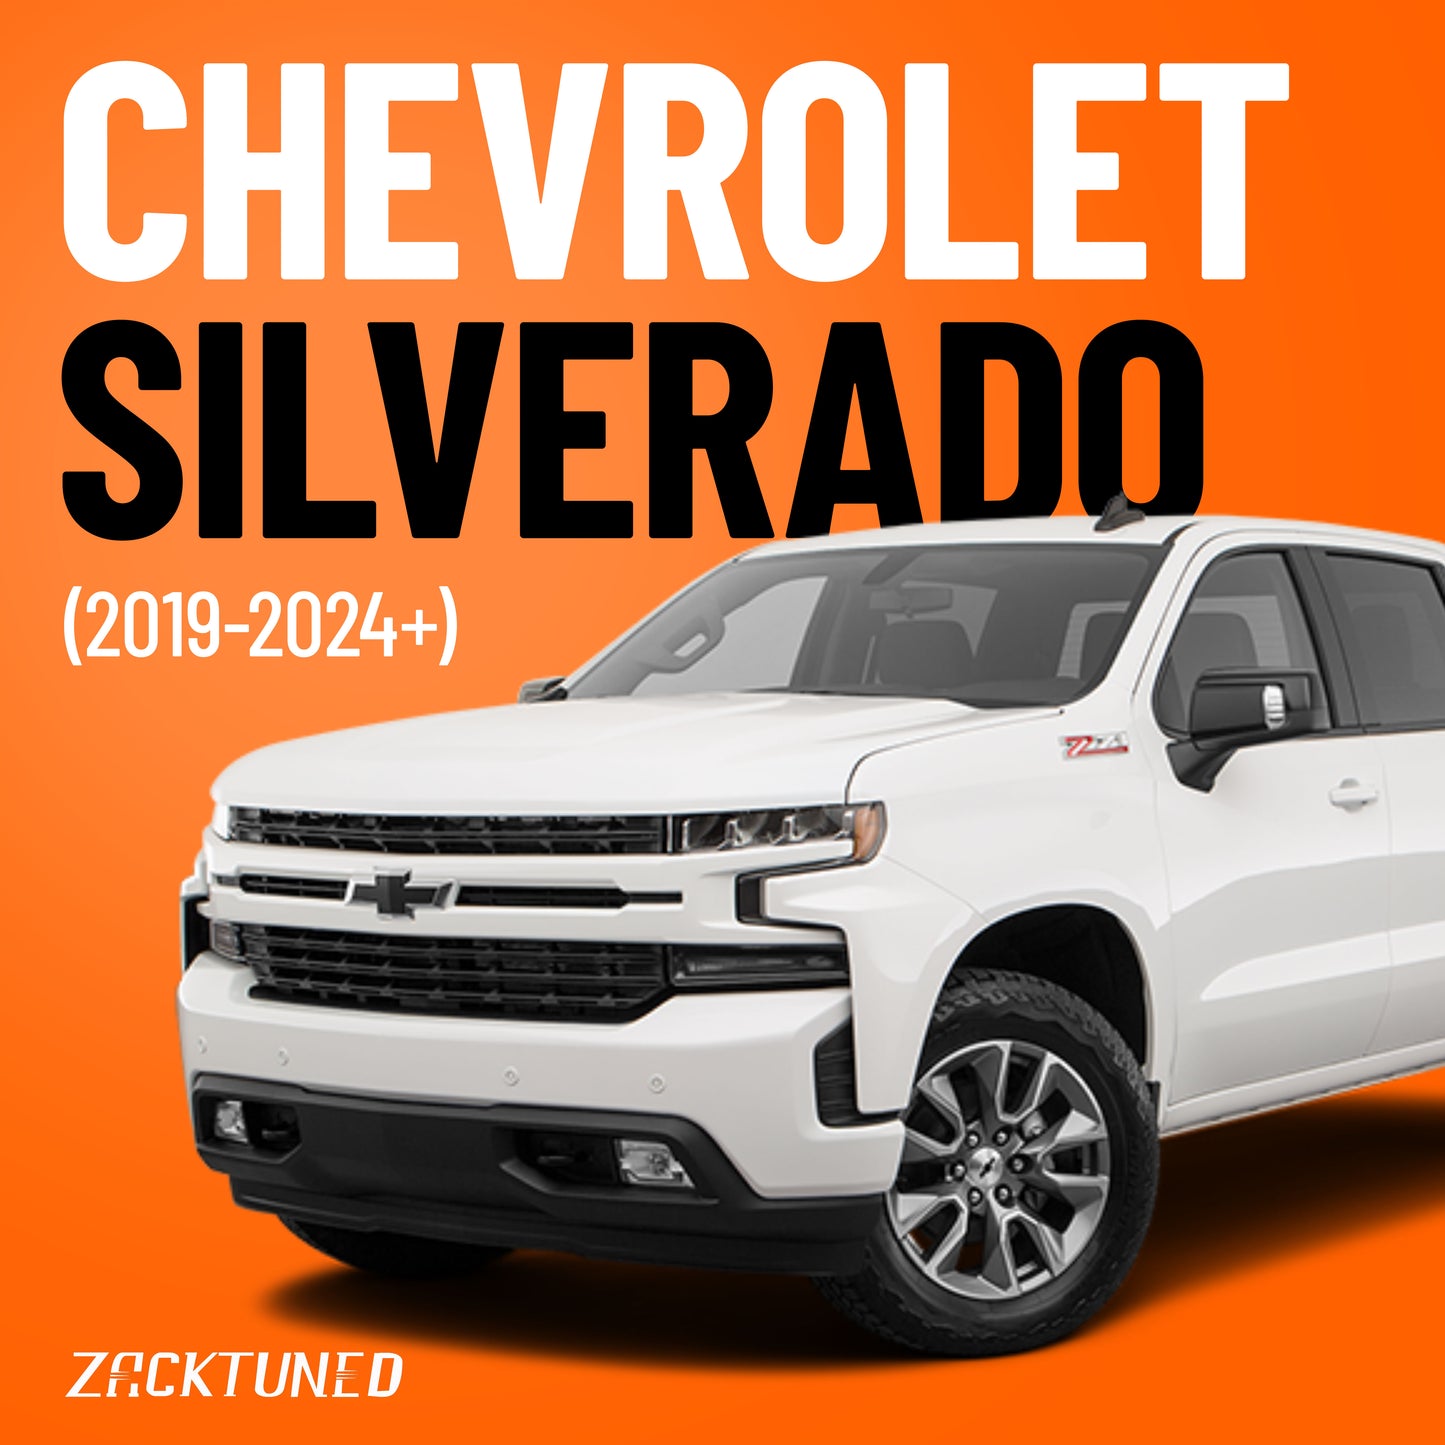 Chevrolet SILVERADO (2019-2024+)